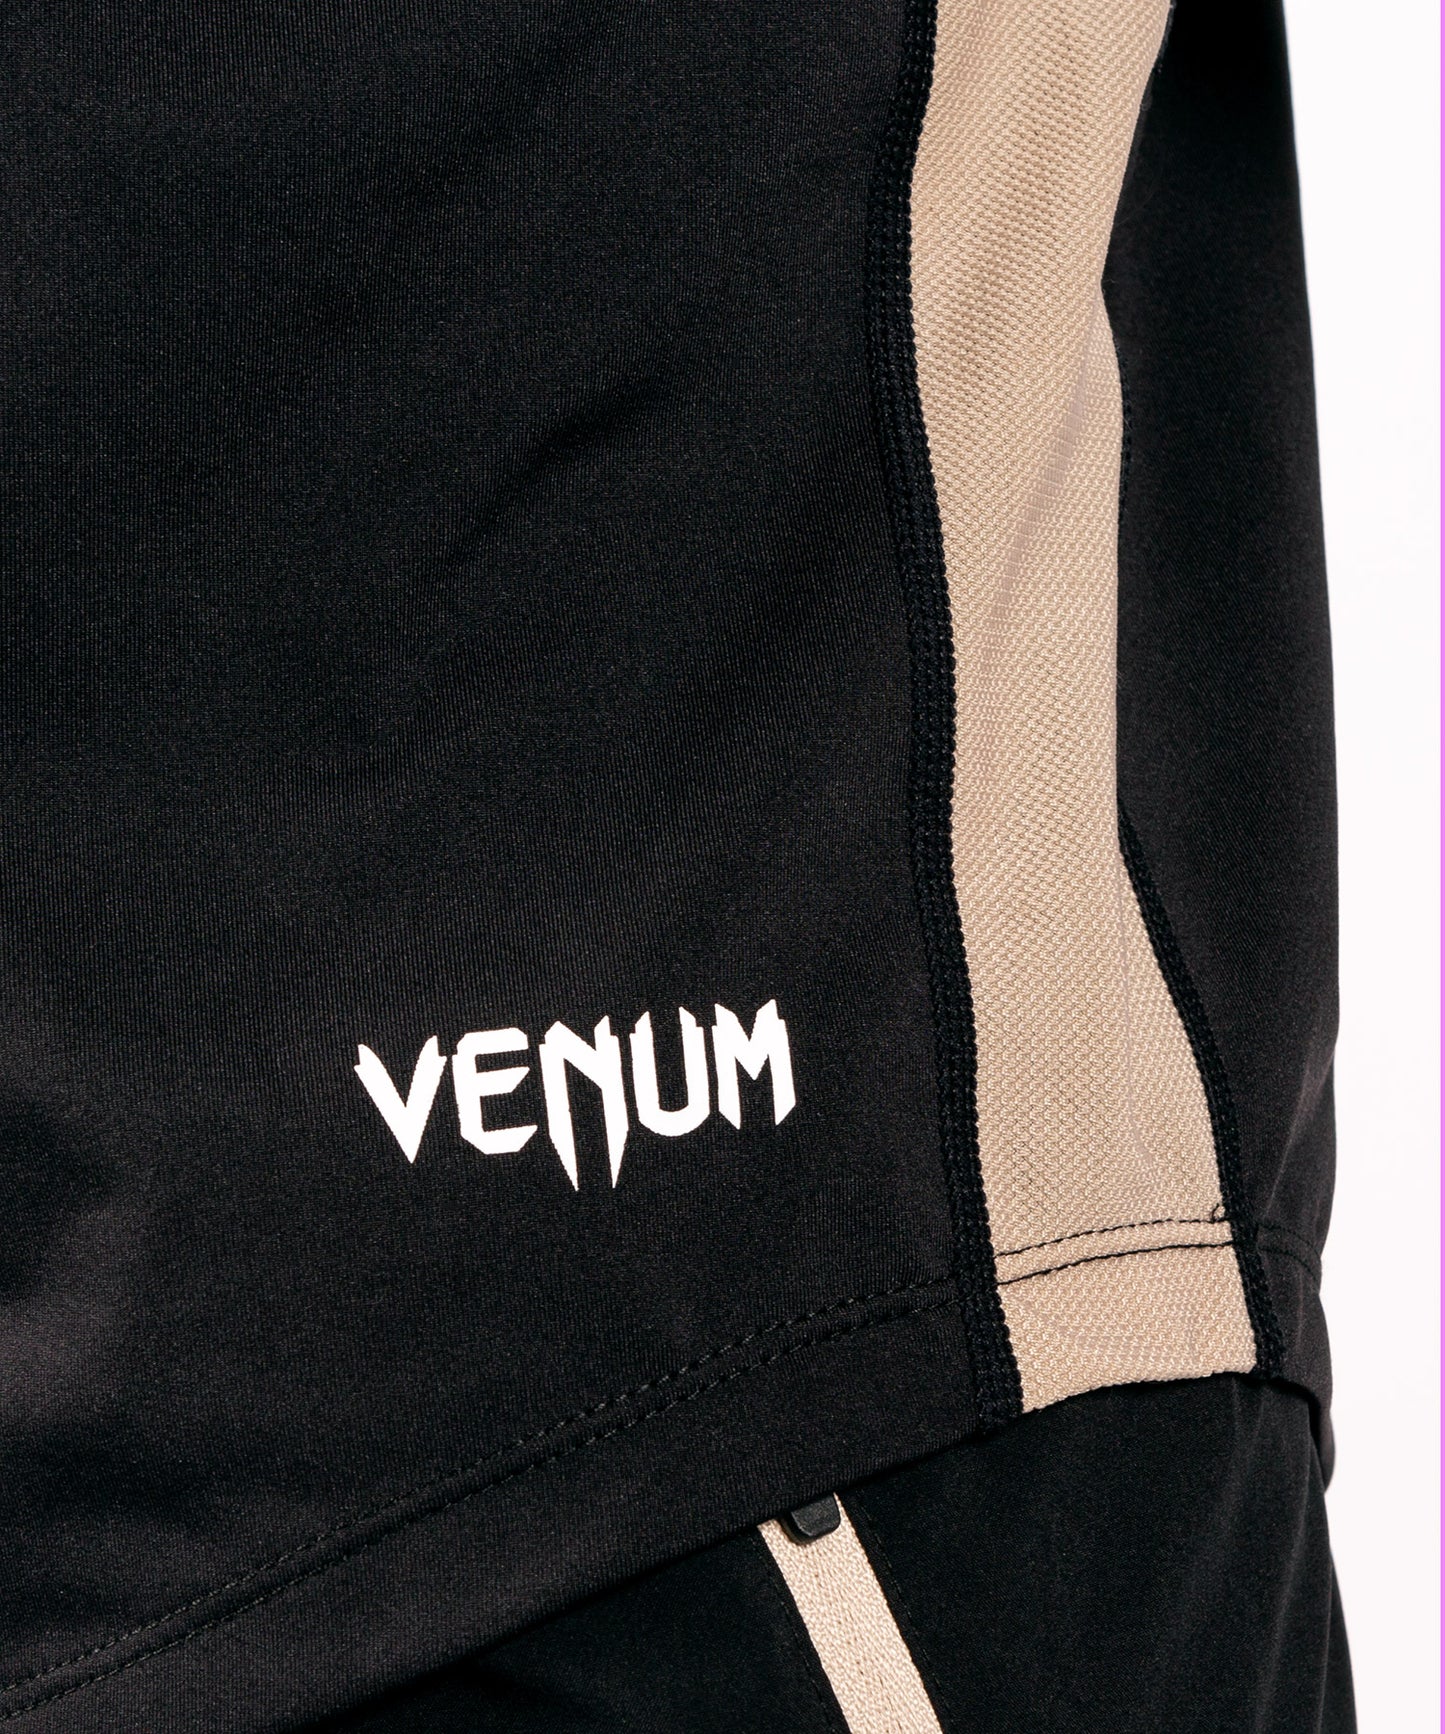 Camiseta Dry Tech Venum Origins - Negro/Blanco